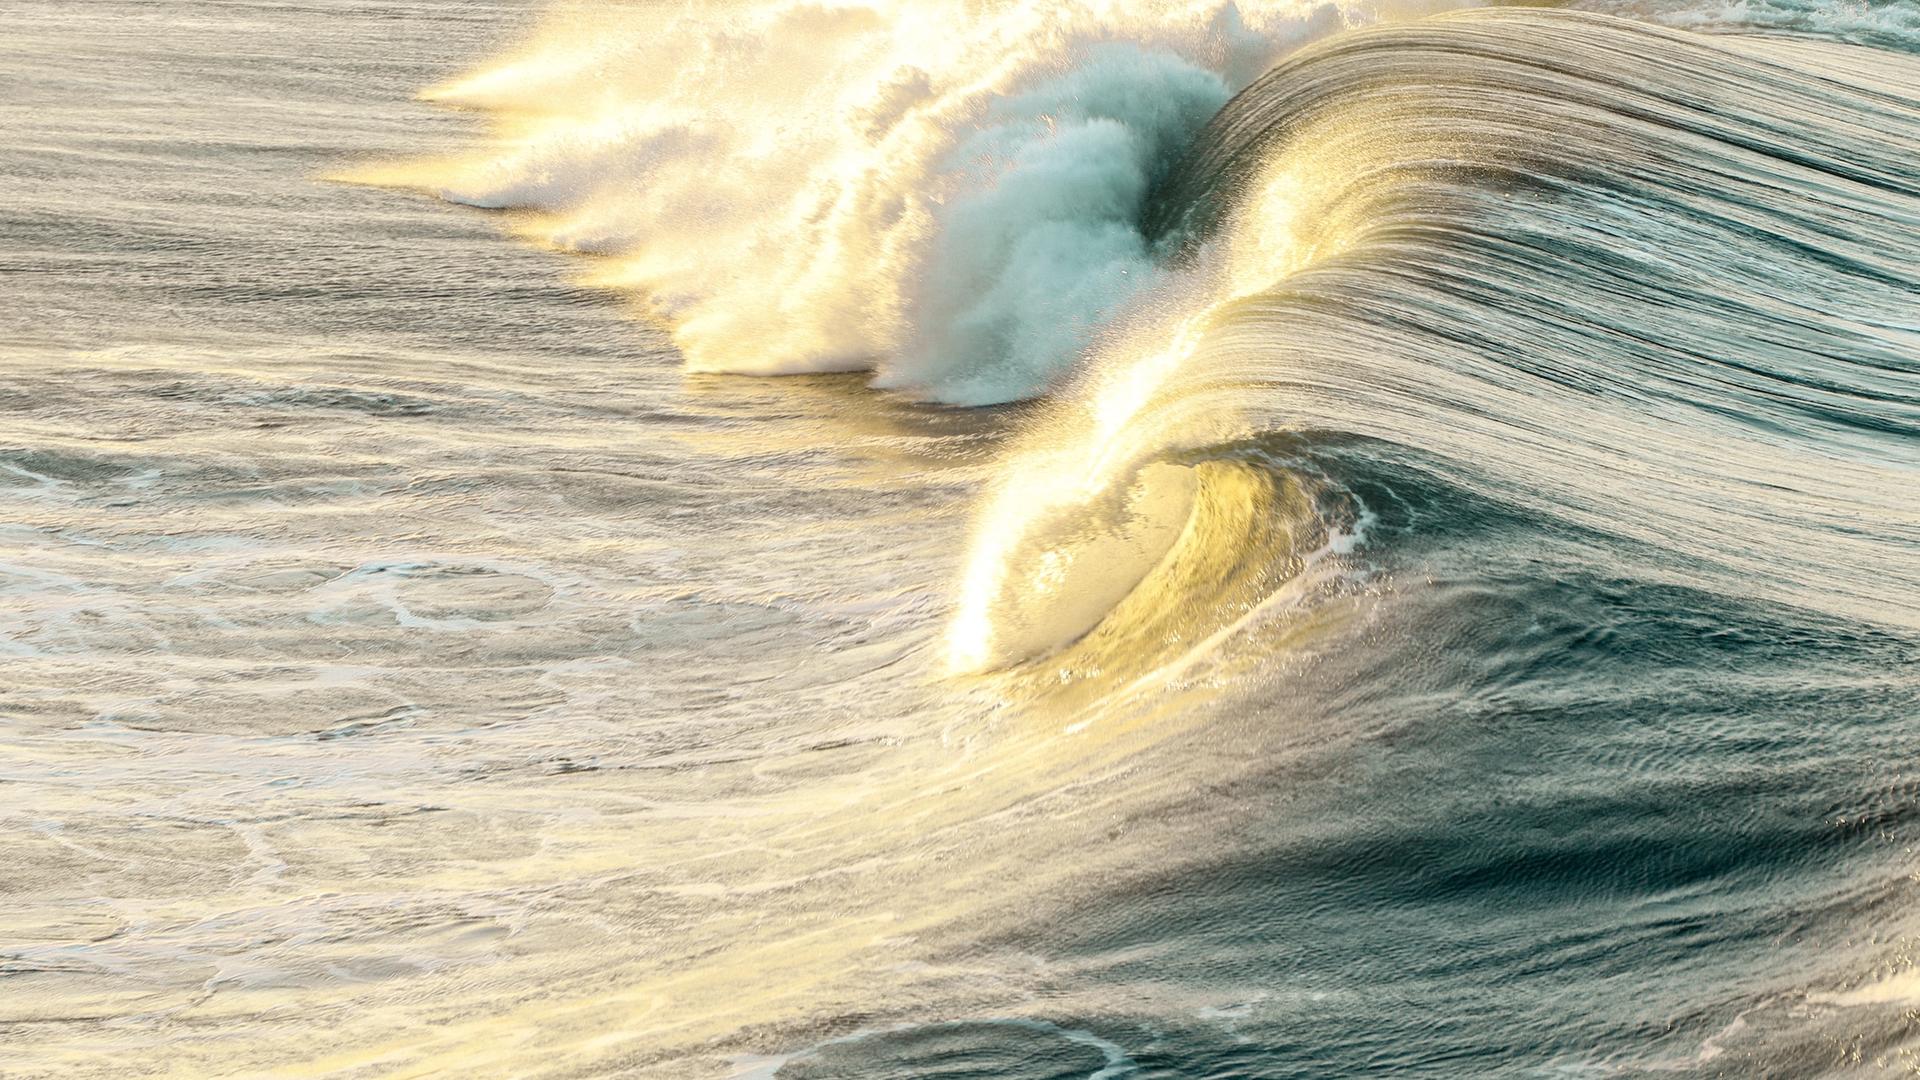 Eine sich überschlagende Welle leuchtet gelblich im Sonnenuntergang.